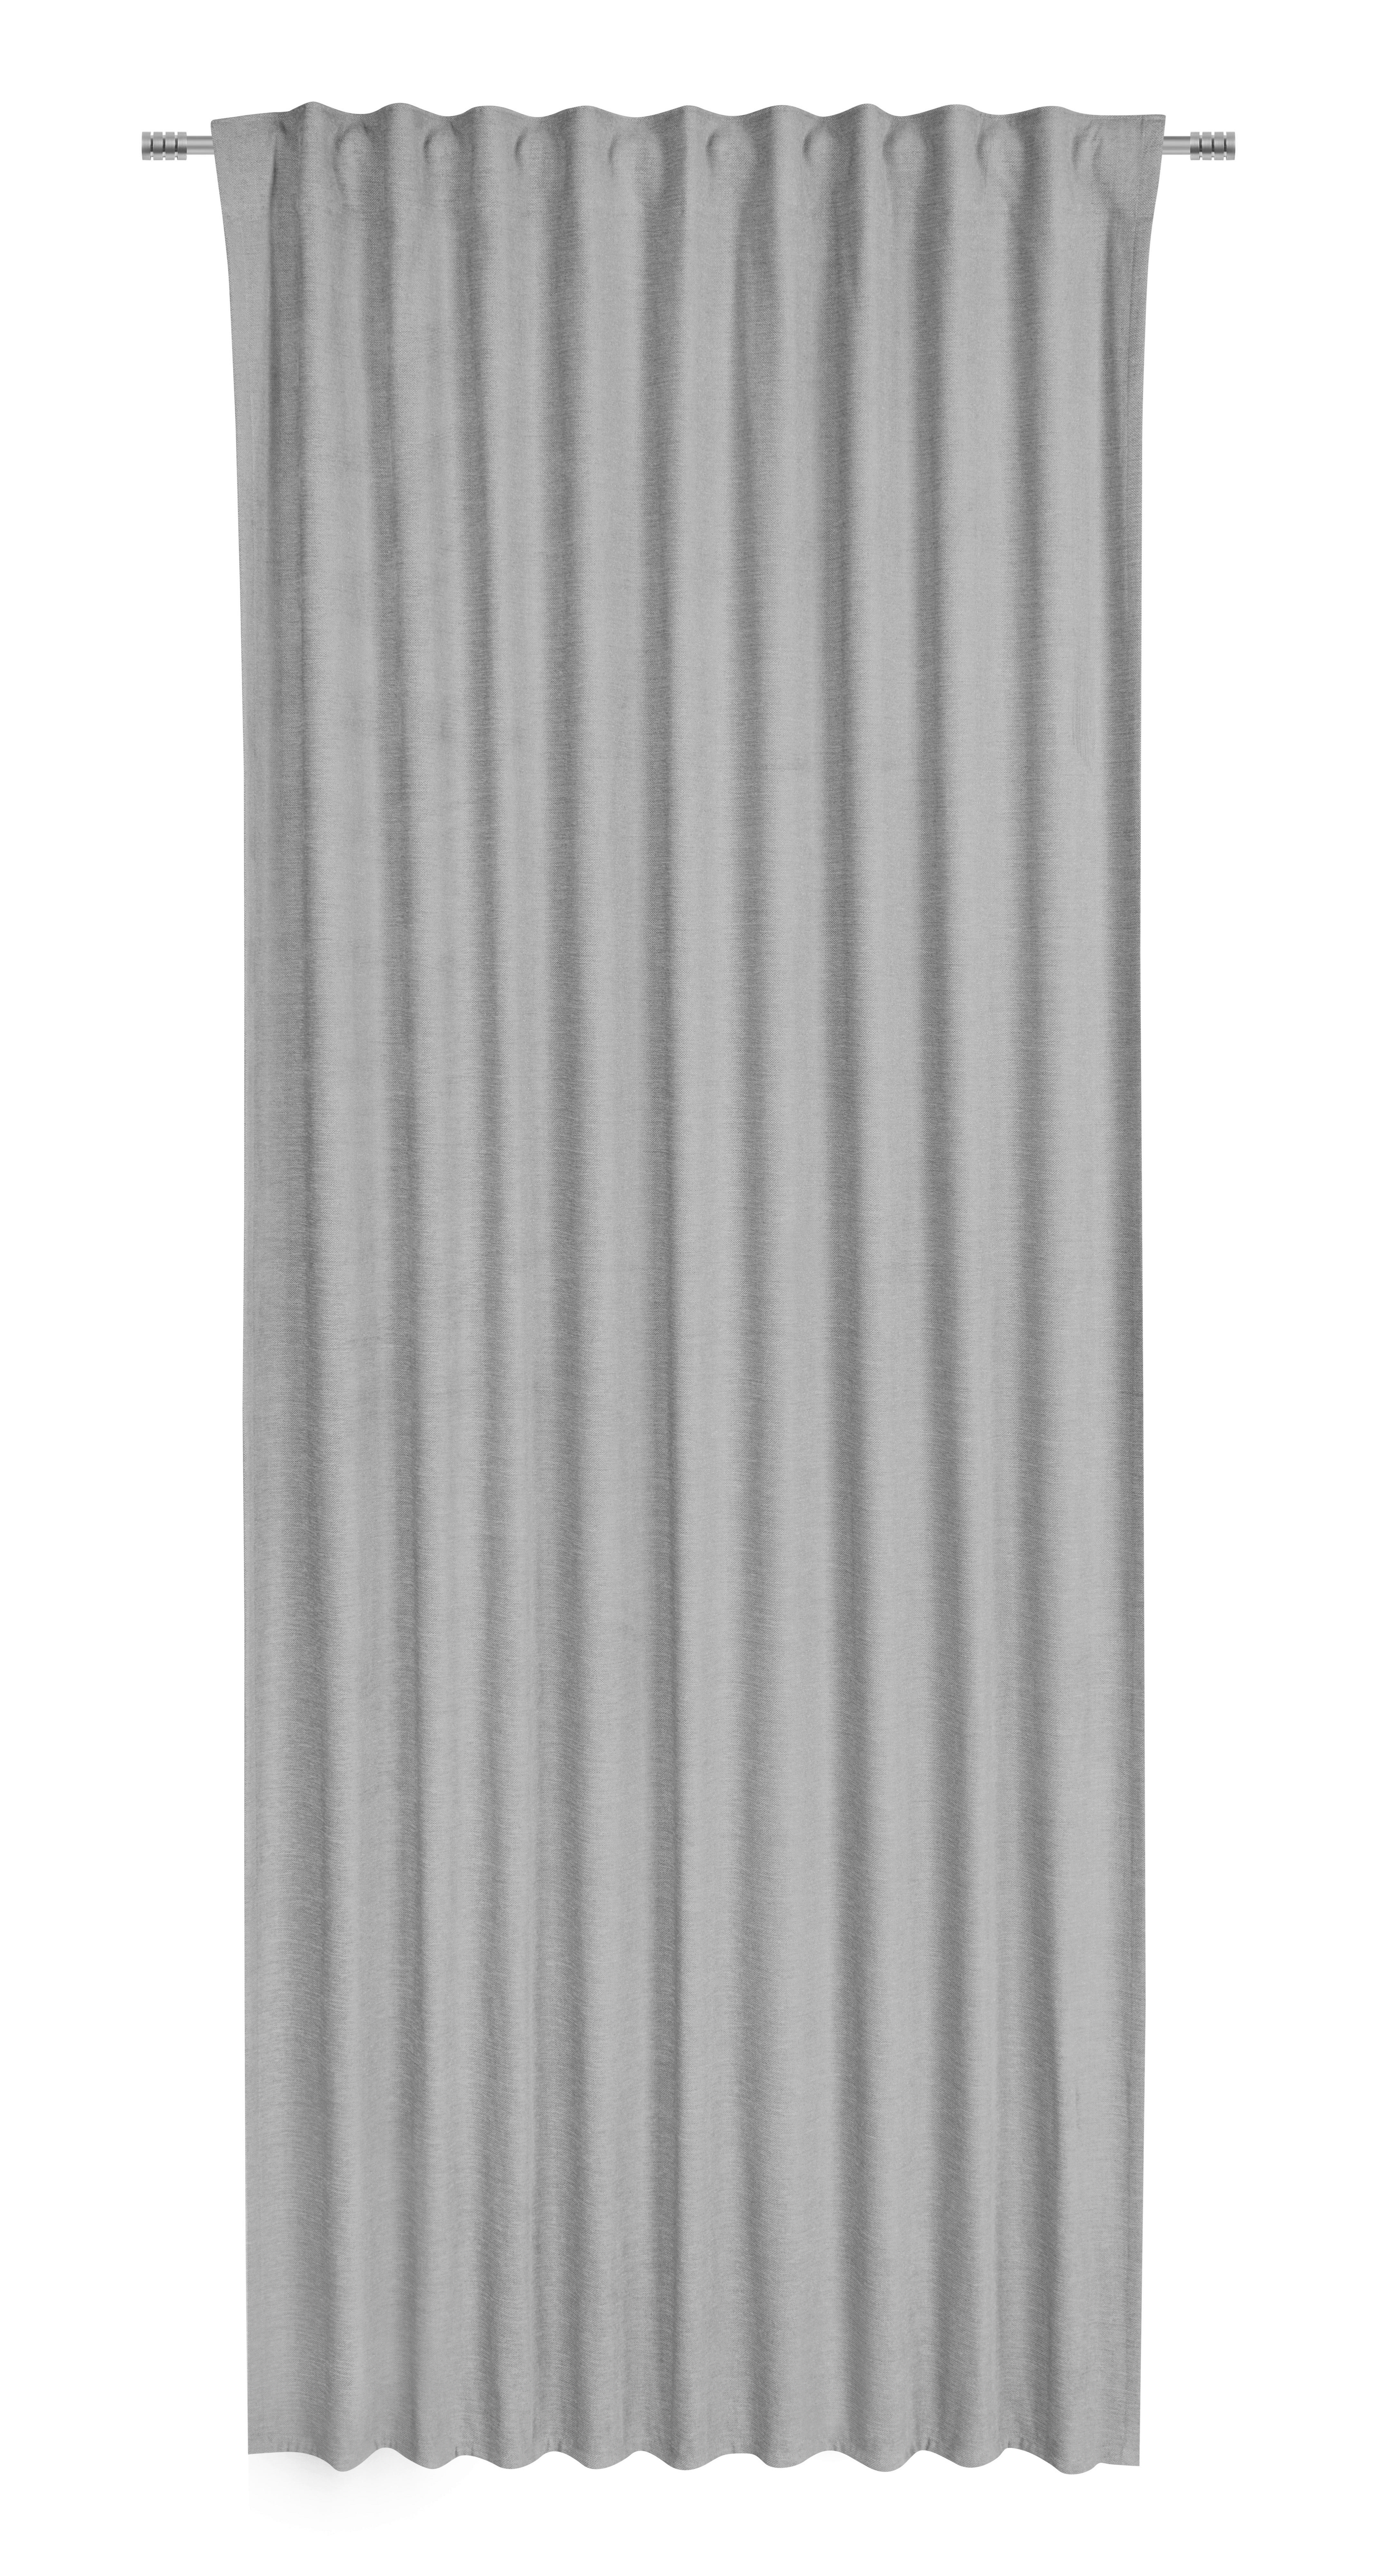 Končana Zavesa Elias - svetlo siva, Konvencionalno, tekstil (135/245cm) - Premium Living